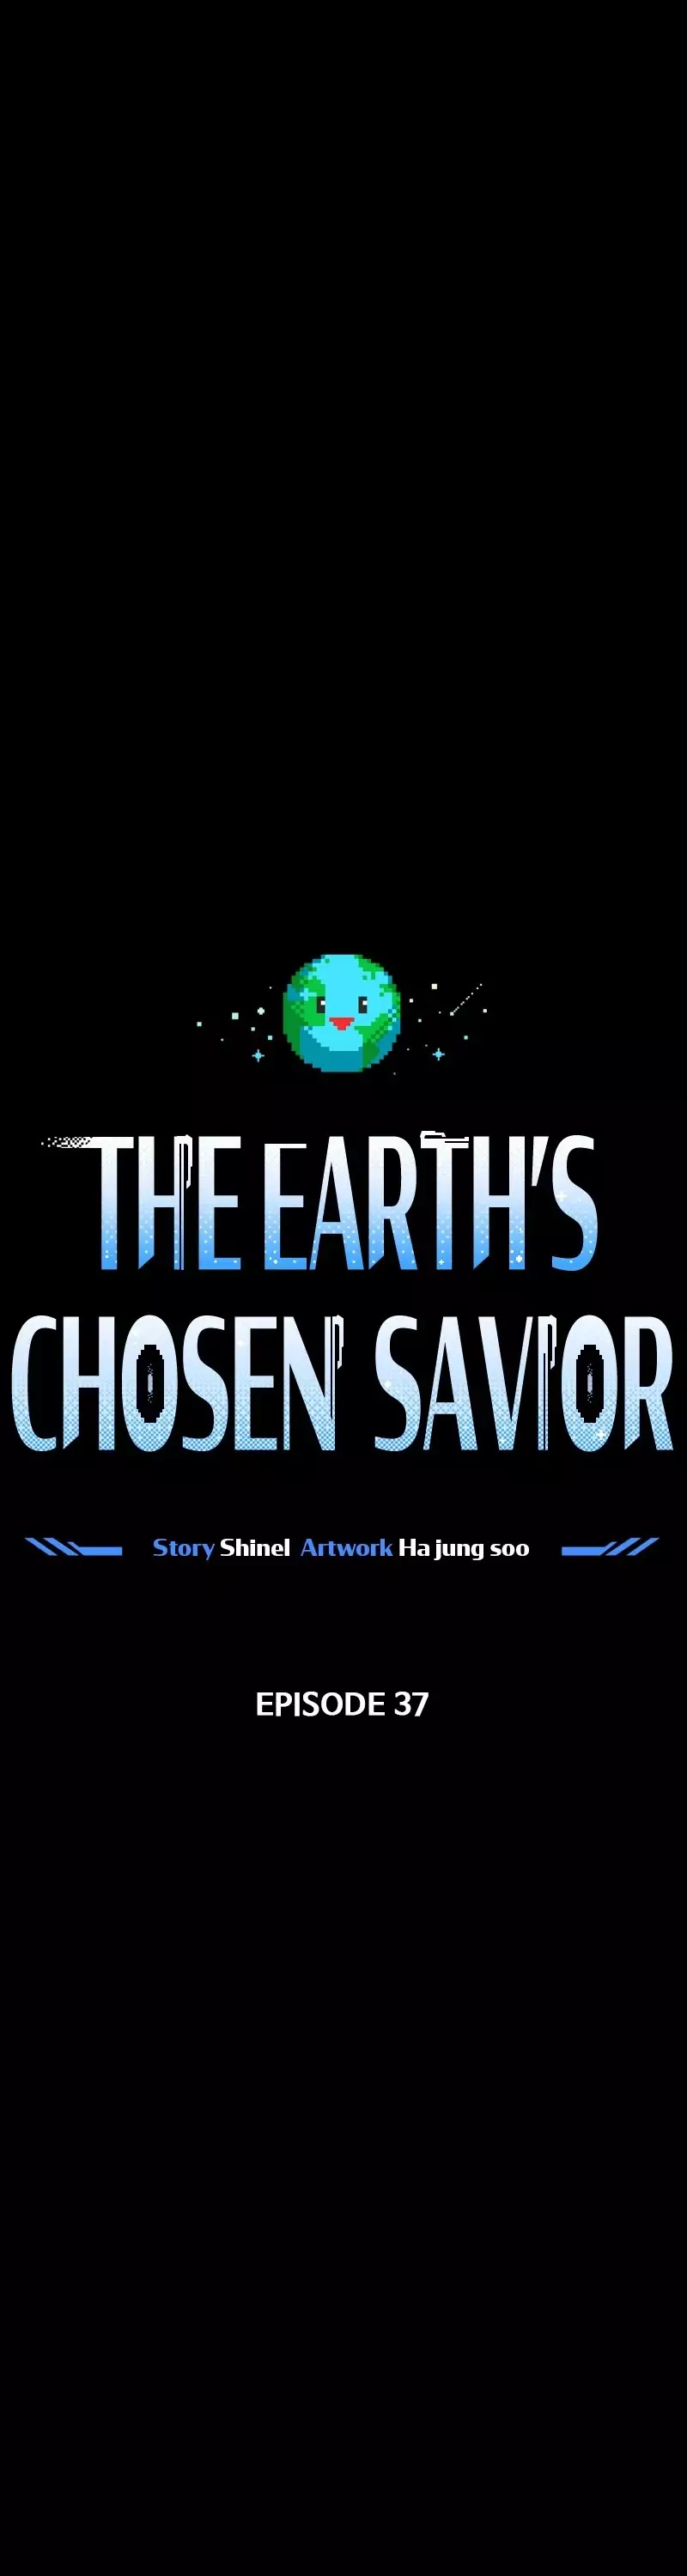 The Earth Savior Selection - 37 page 1-cf6c6c15